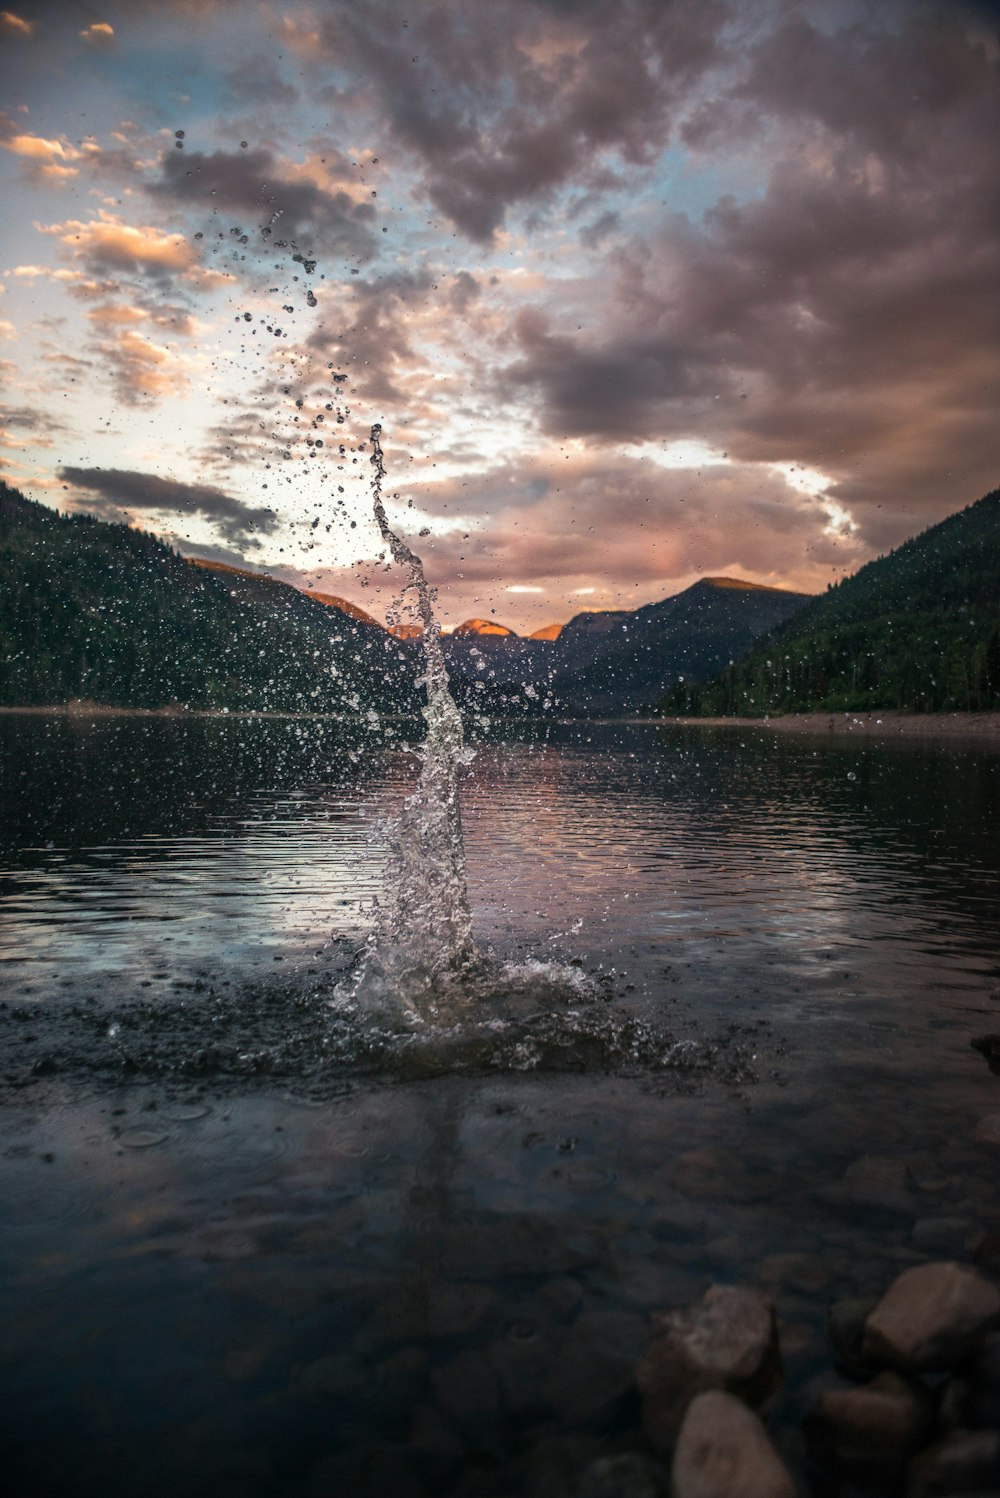 time lapse photography of water splash photo – Free Nature Image on Unsplash